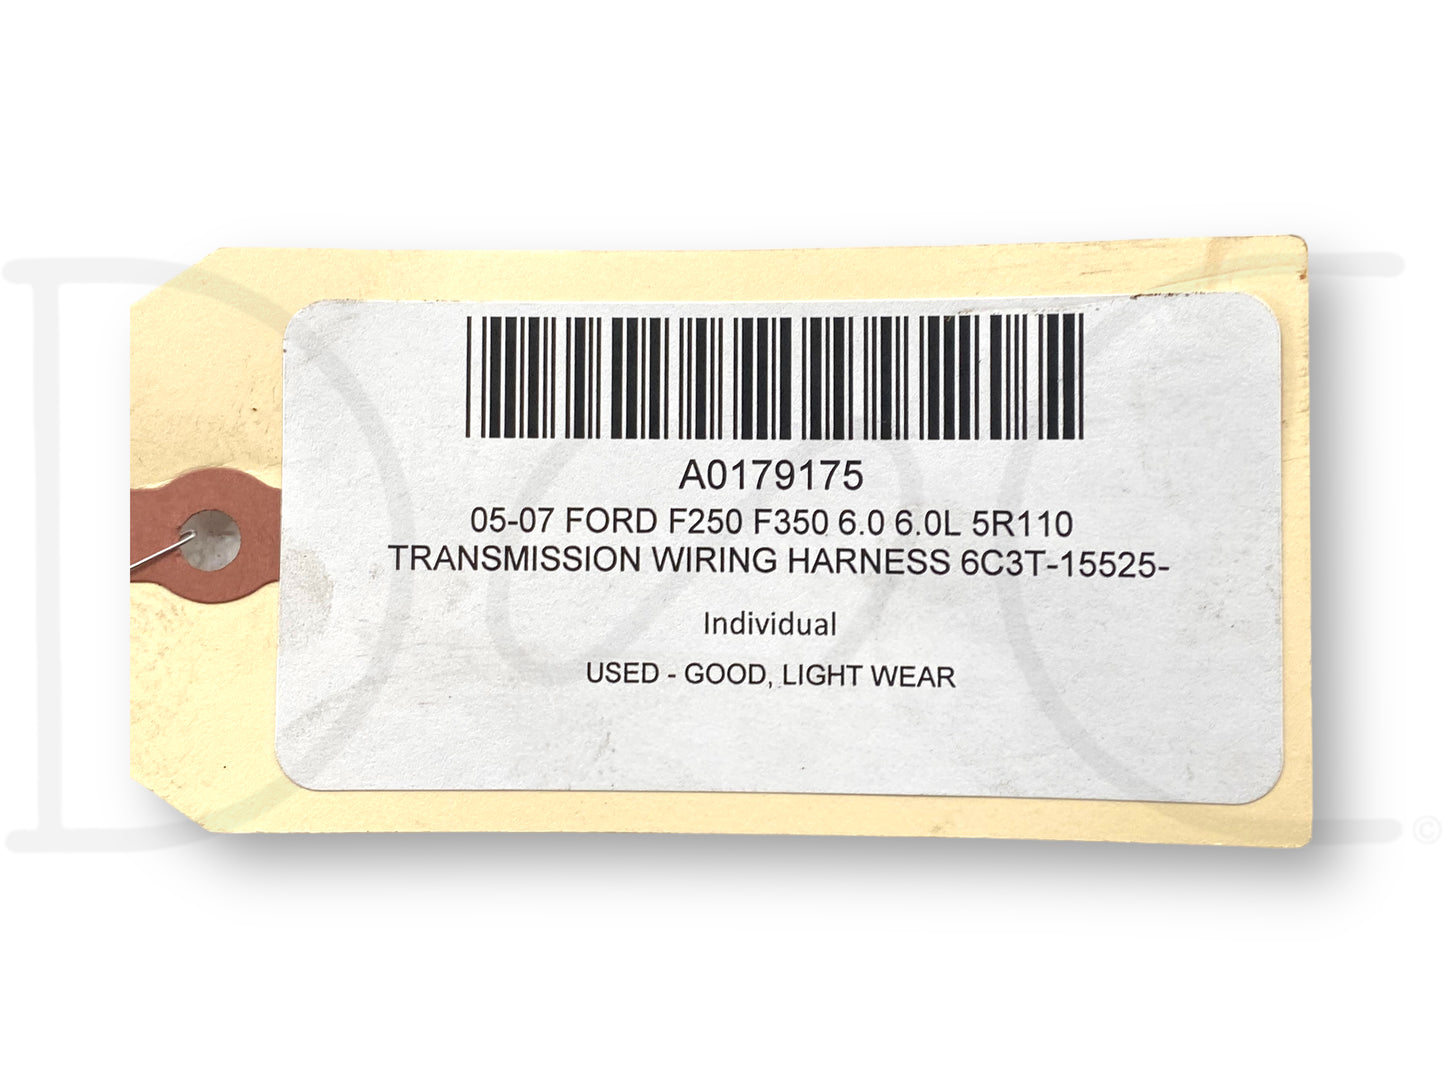 05-07 Ford F250 F350 6.0 6.0L 5R110 Transmission Wiring Harness 6C3T-15525-P260N